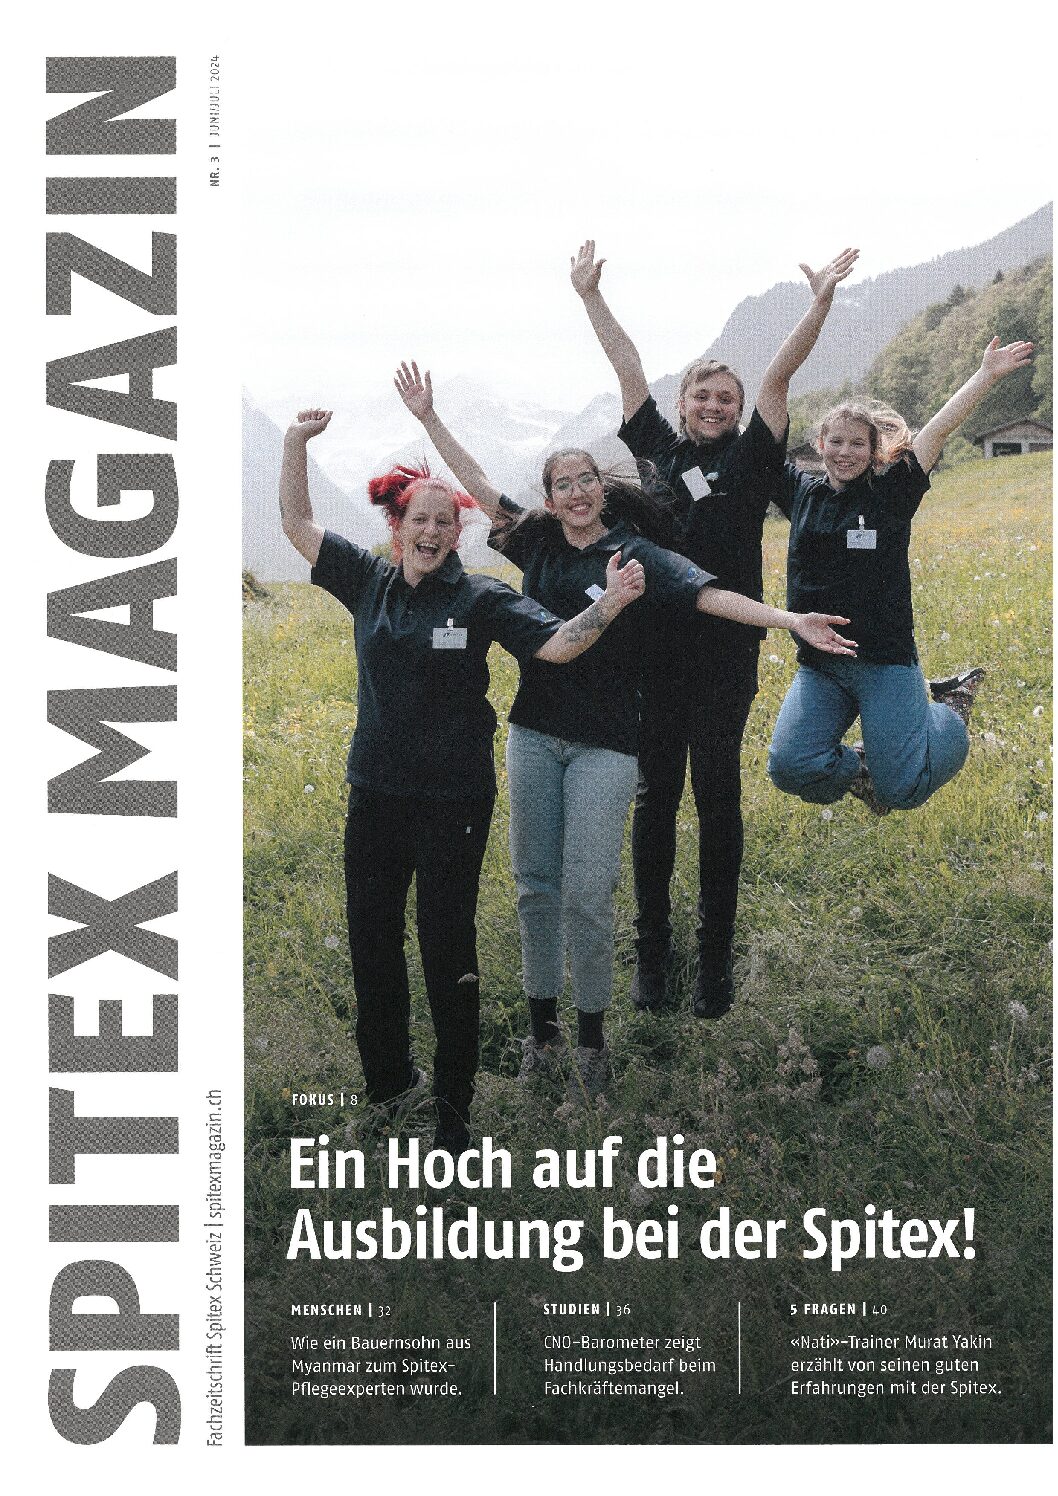 SPITEX Magazin Nr. 3 mit dem Fokus Ausbildung bei der SPITEX